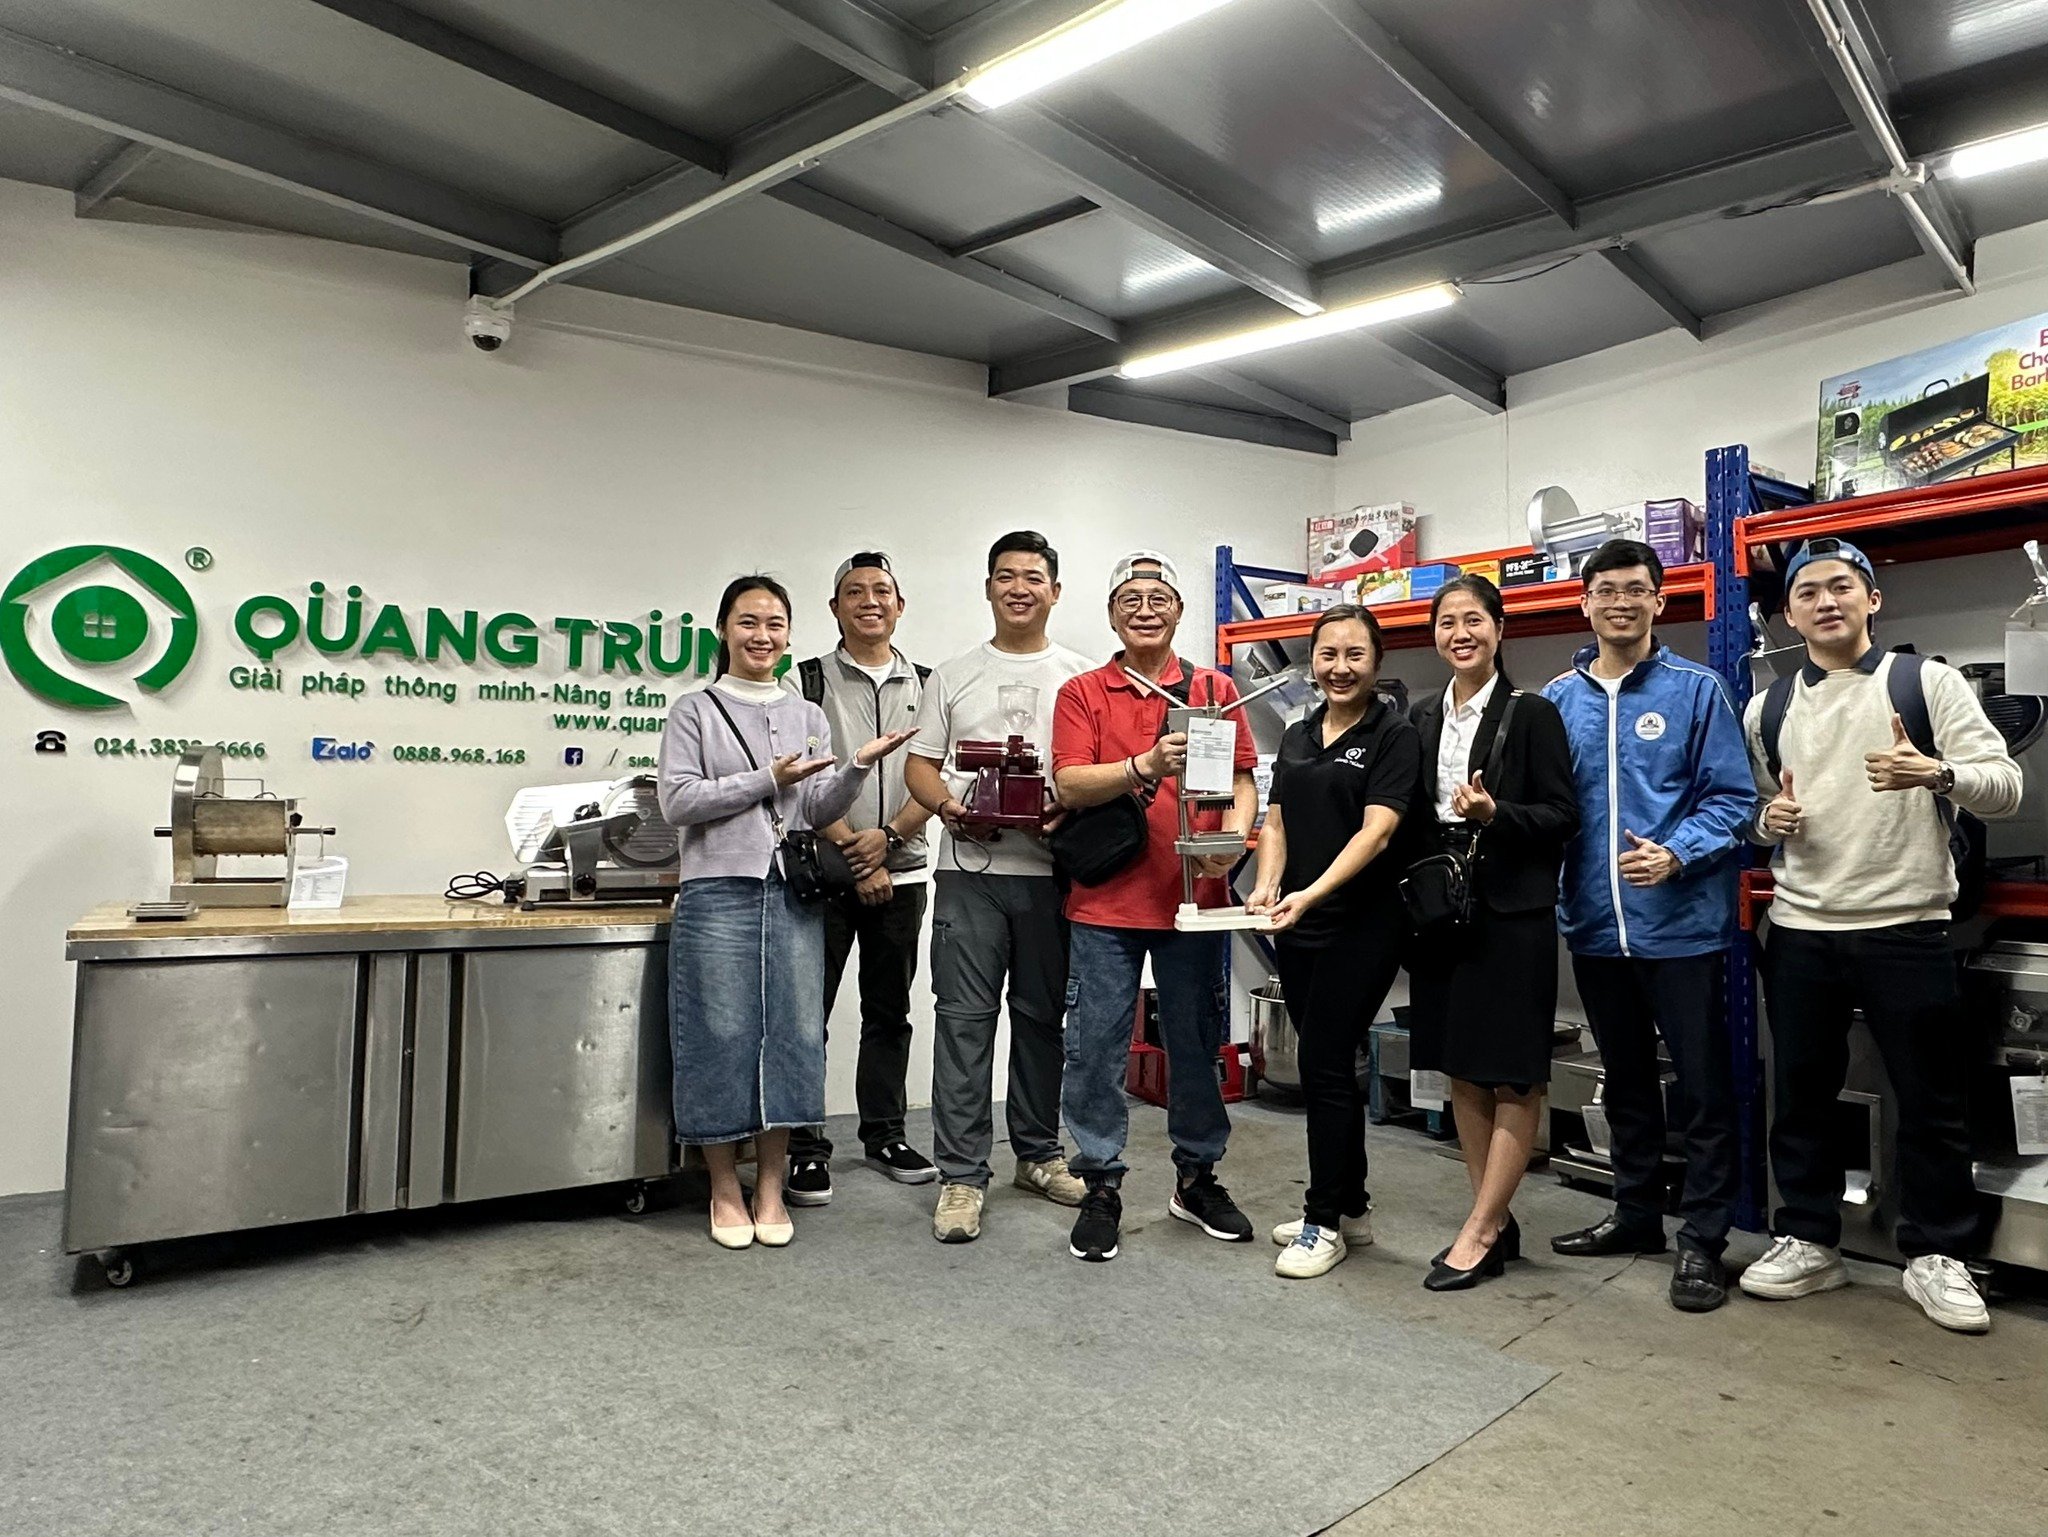 Dịch Vụ Sửa Chữa Bảo Hành Hàng Đầu tại Siêu Thị Máy Thực Phẩm Quang Trung